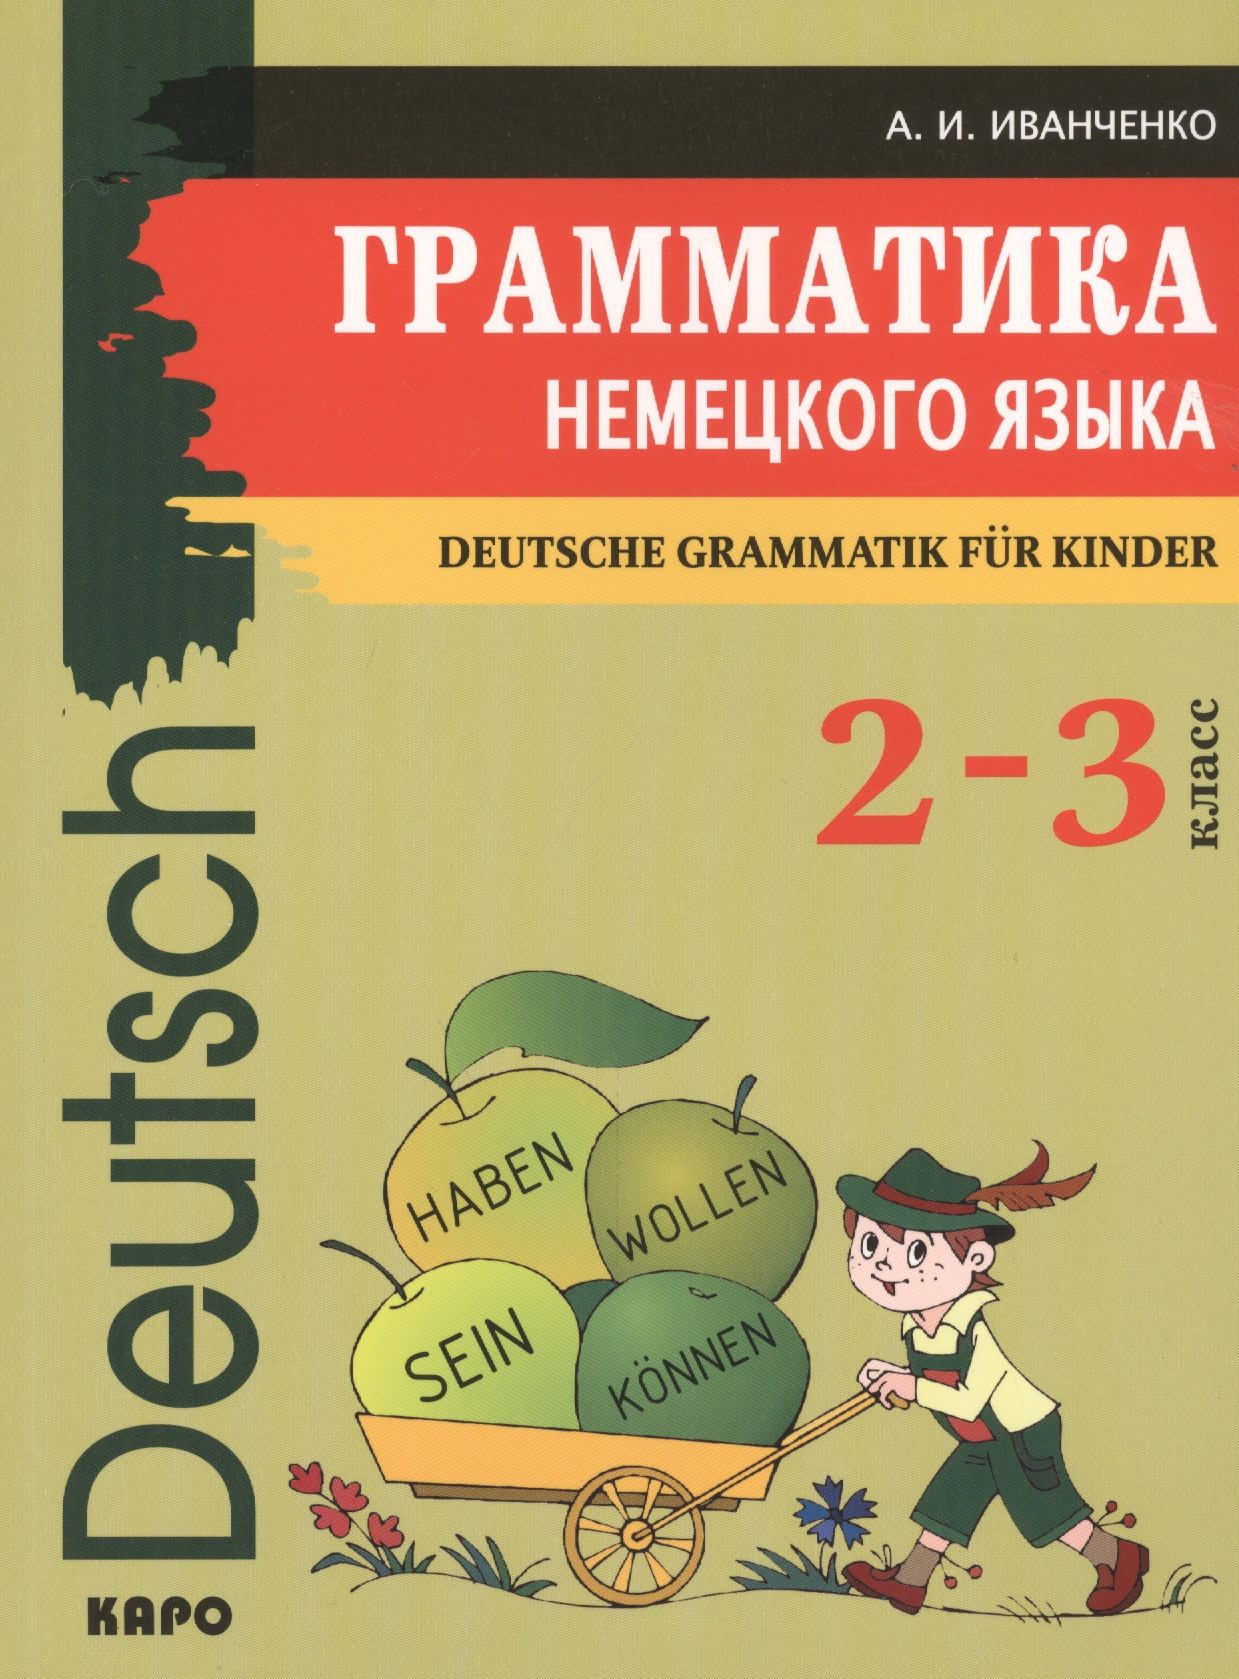 Иванченко Анна Игоревна Грамматика немецкого языка для младшего школьного возраста. (2-3 класс)